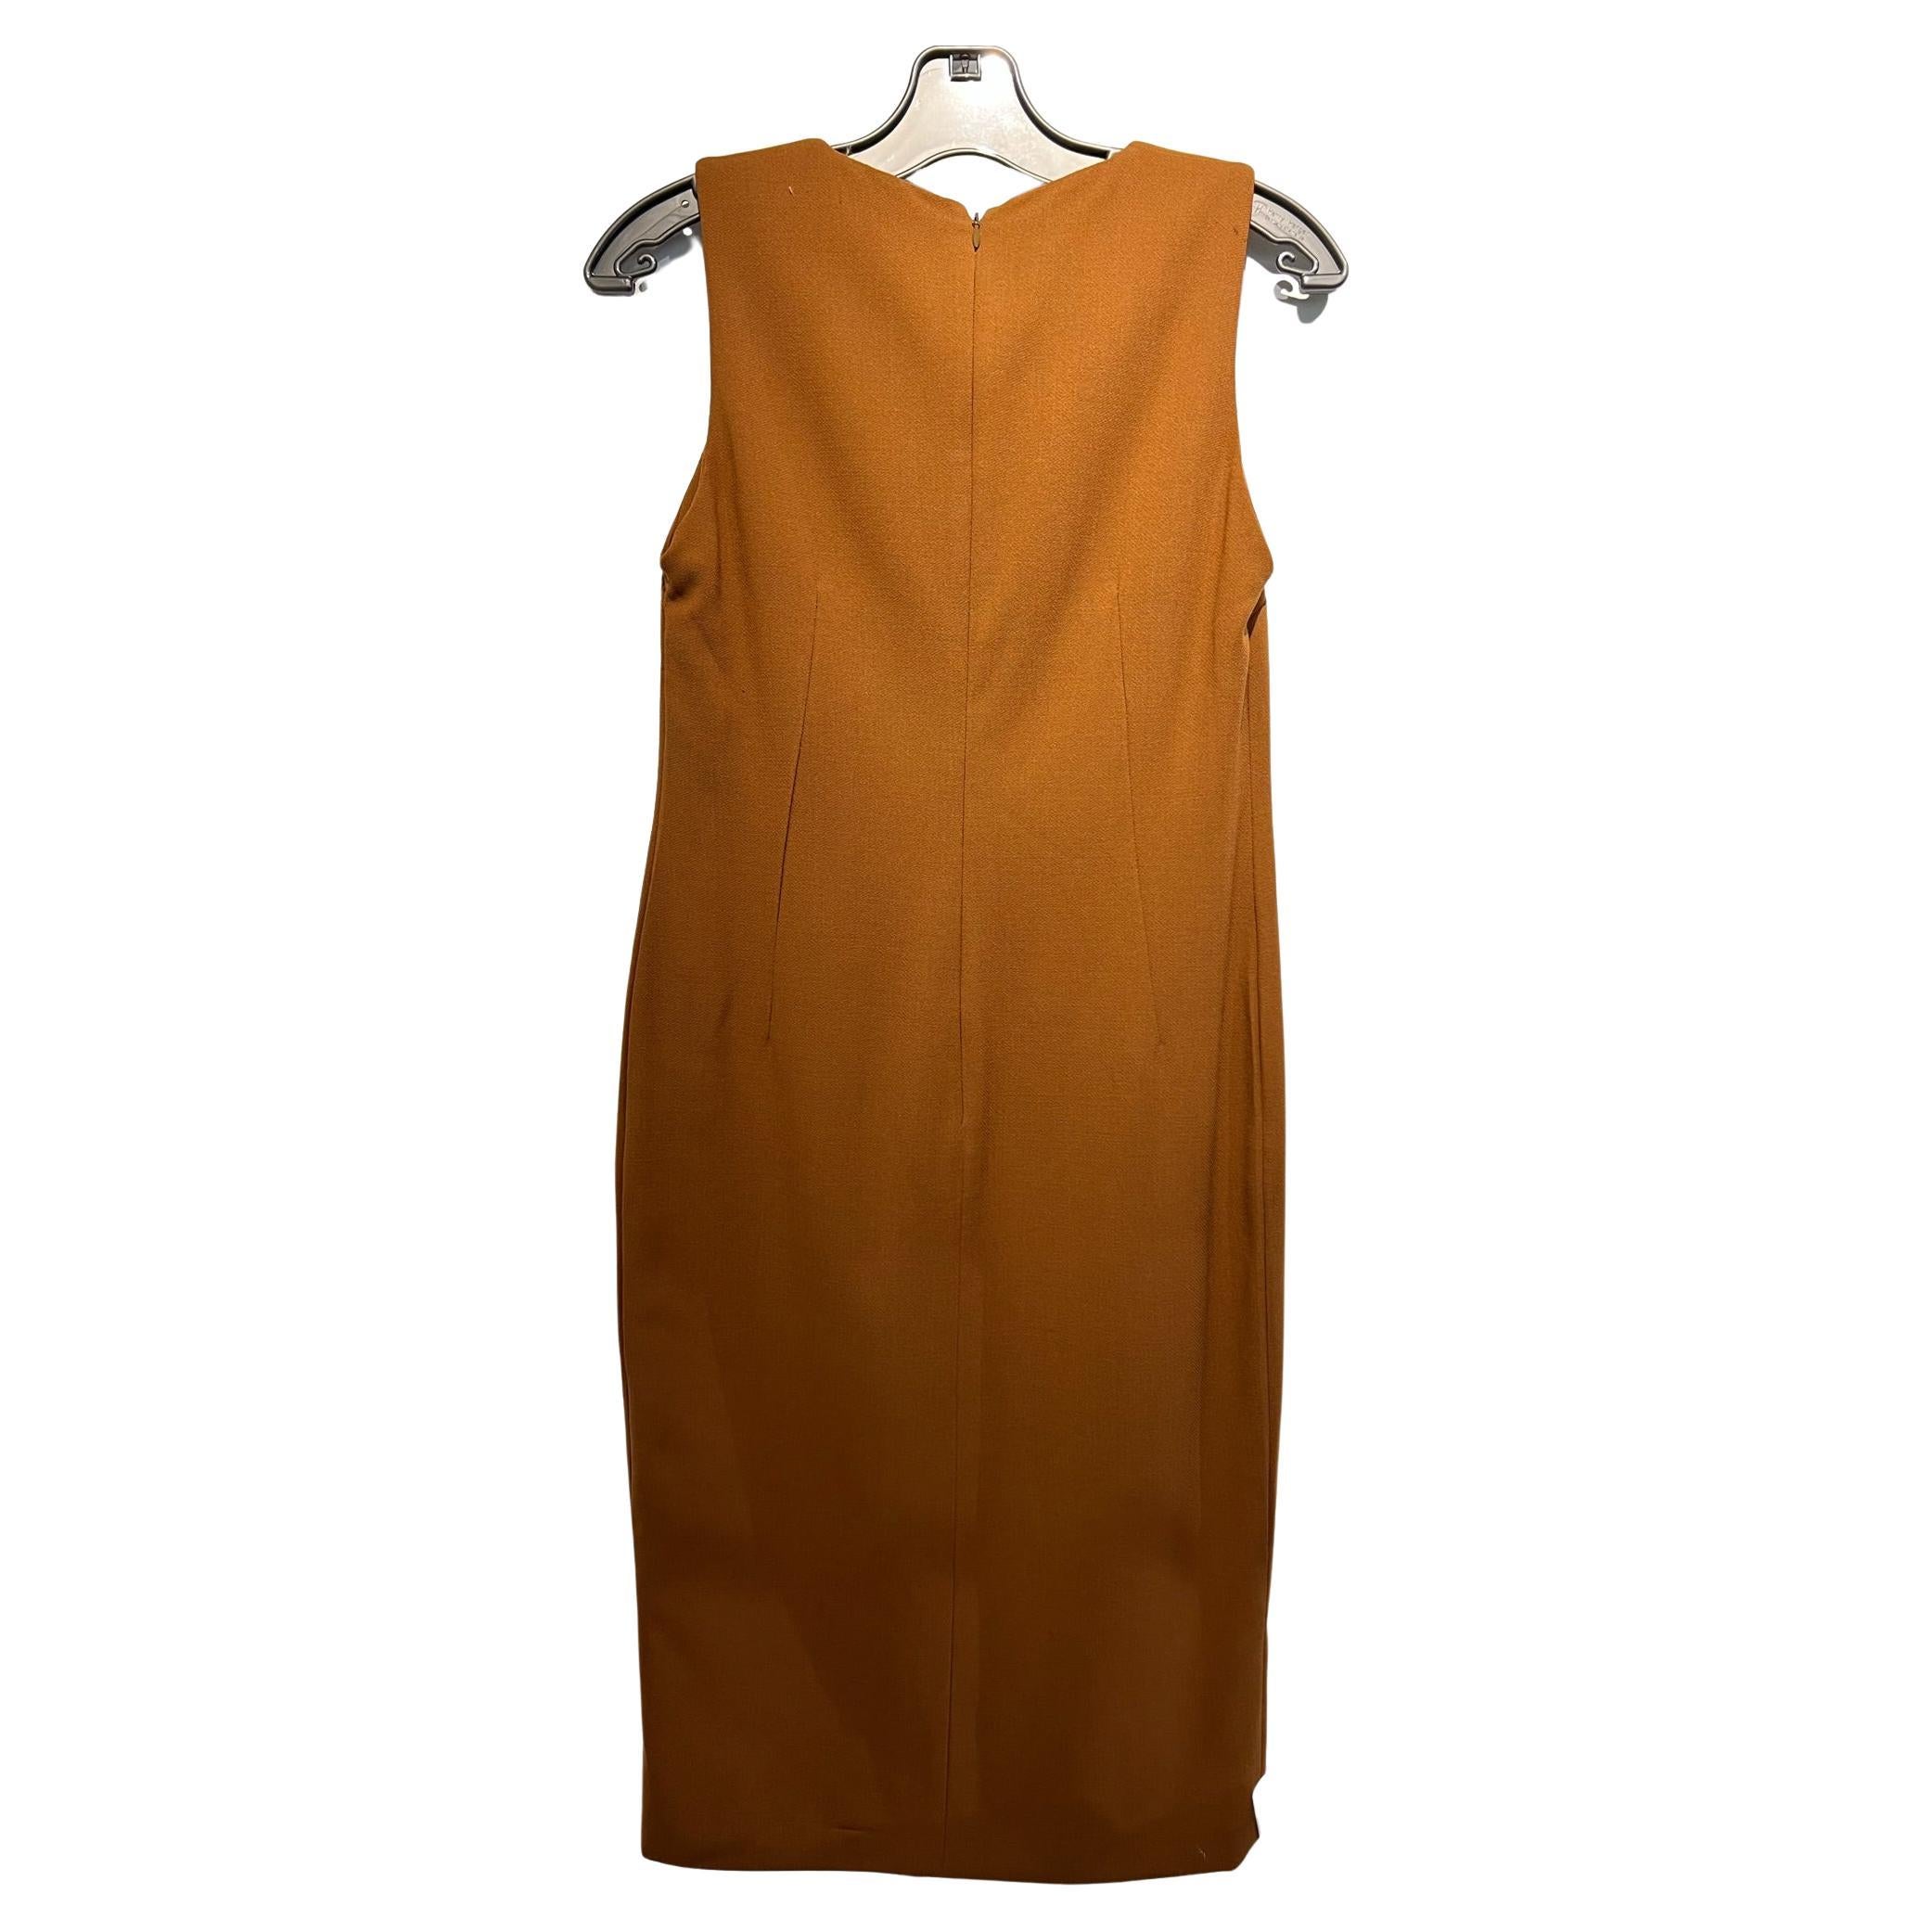 Brown Dolce & Gabbana Dress Sleeveless V-Neck Amber